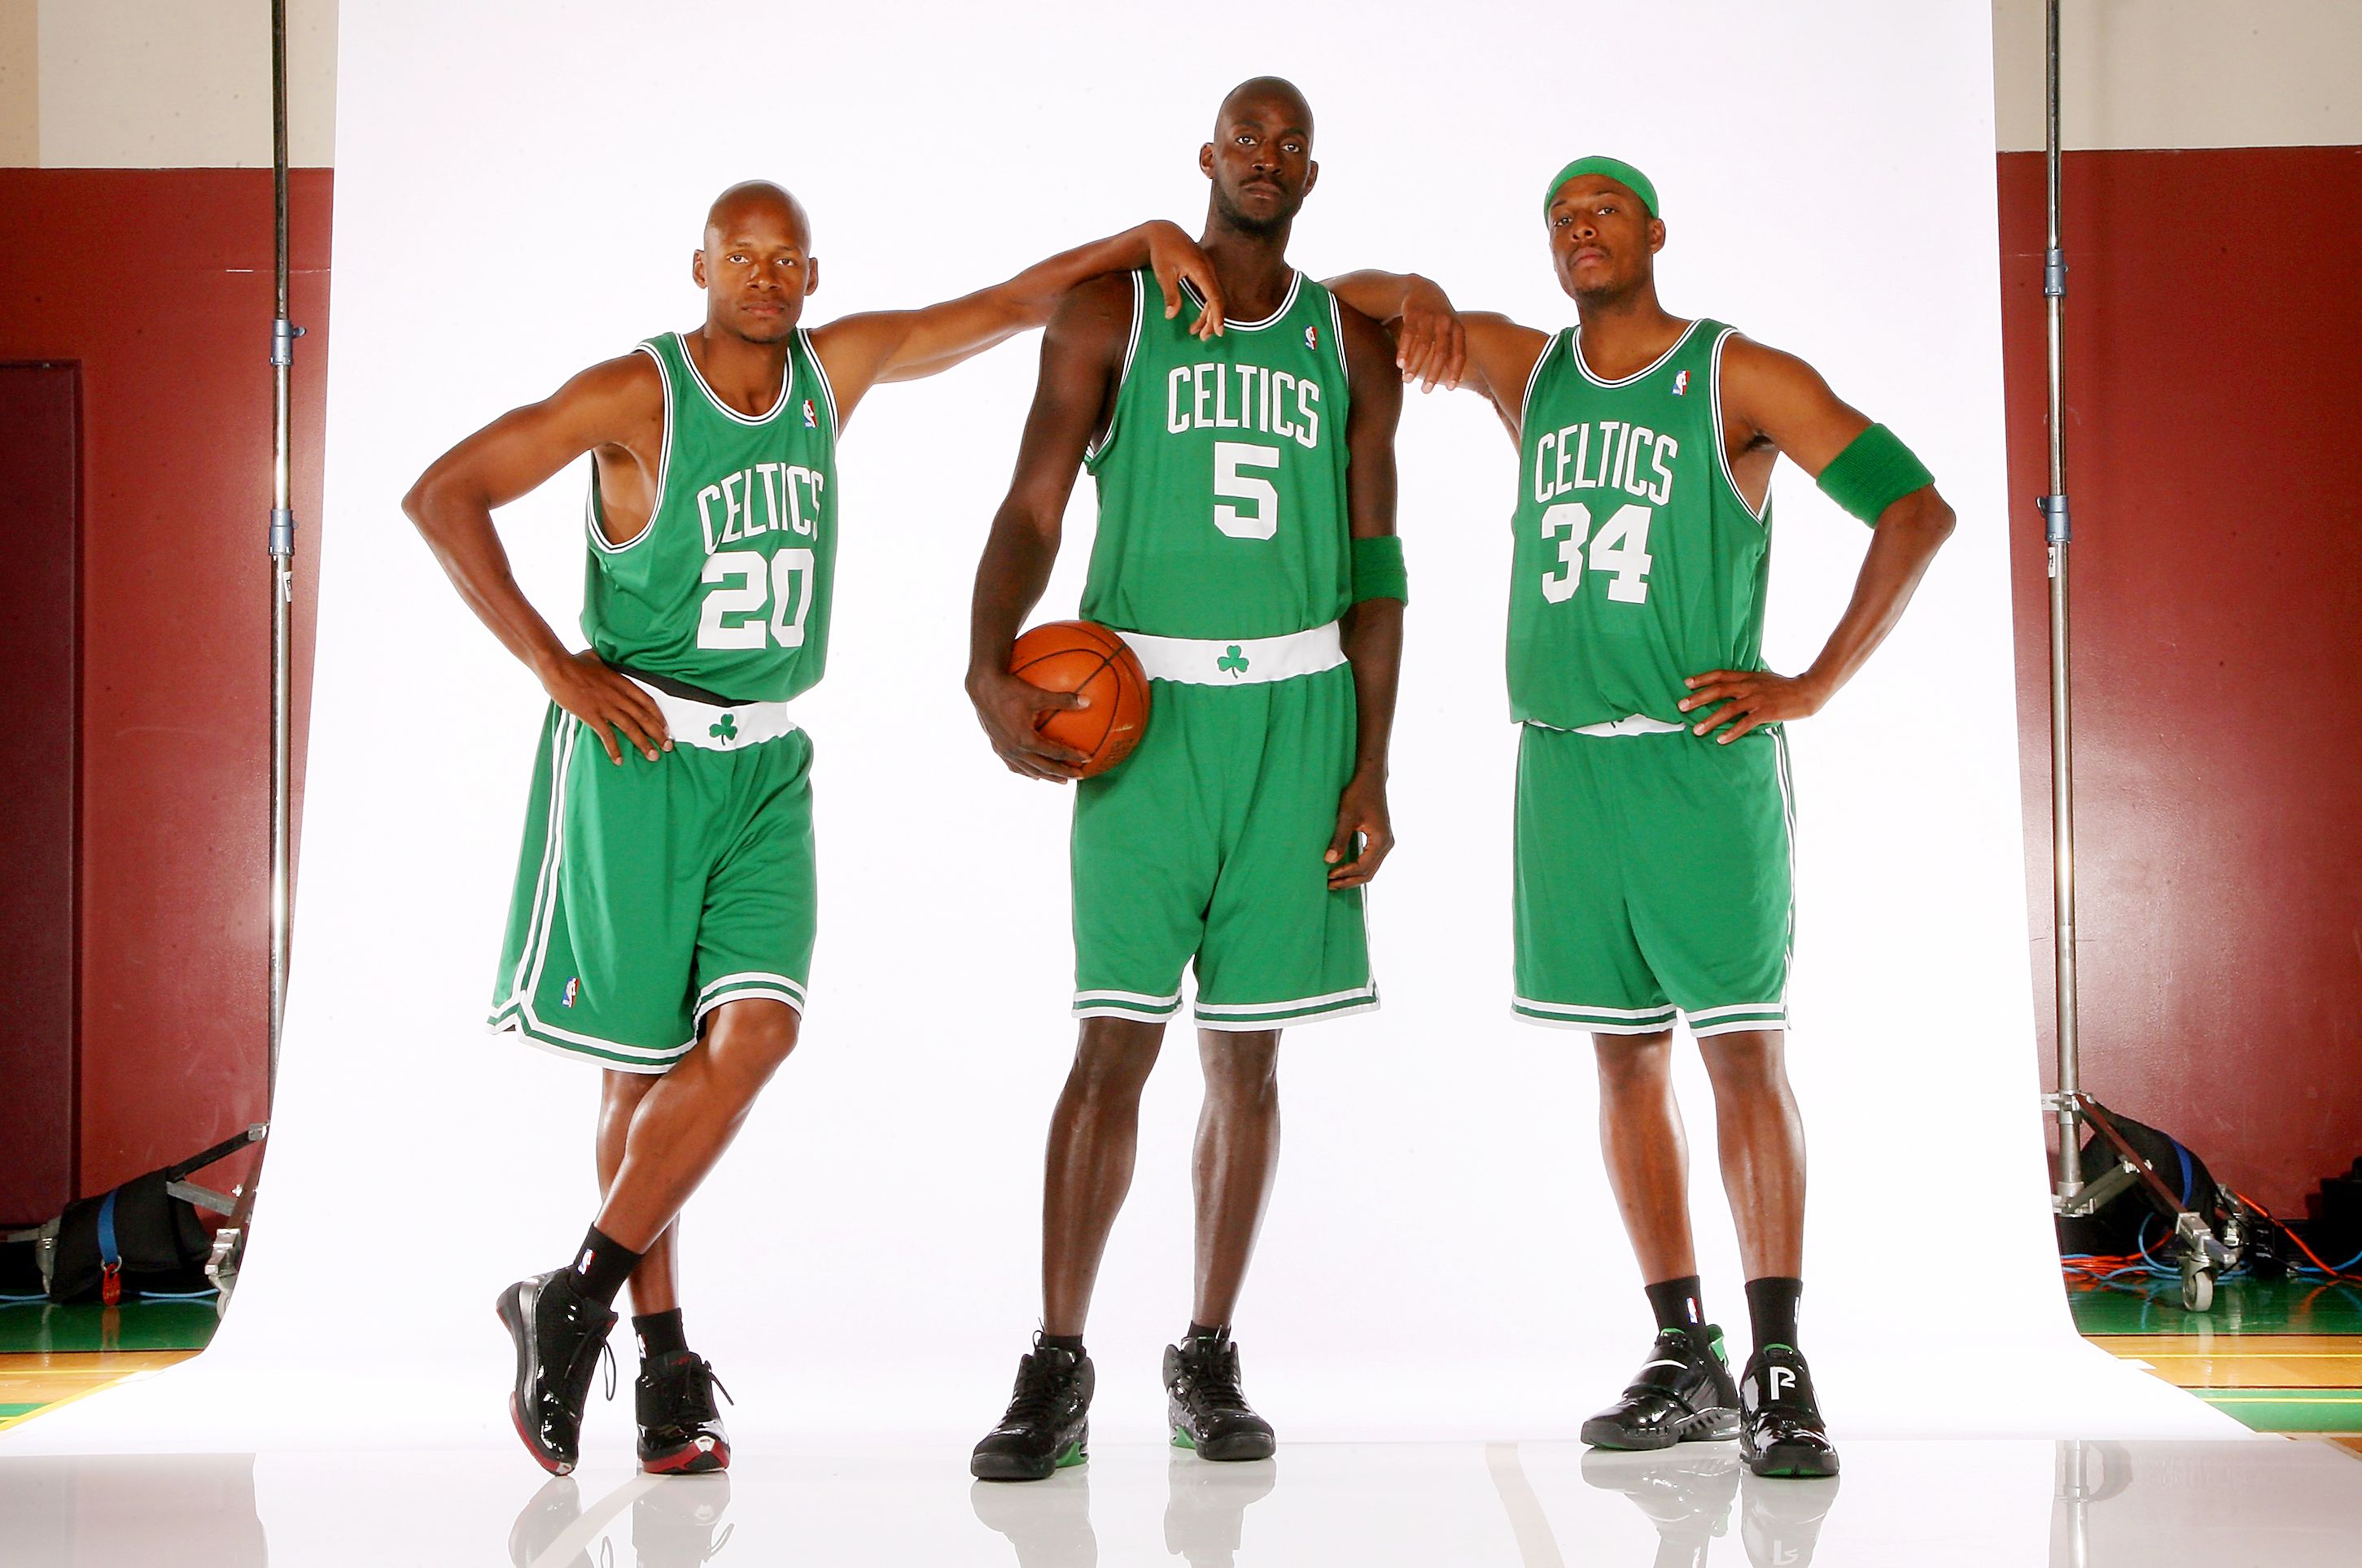 joins the Celtics Kevin career retrospective ESPN